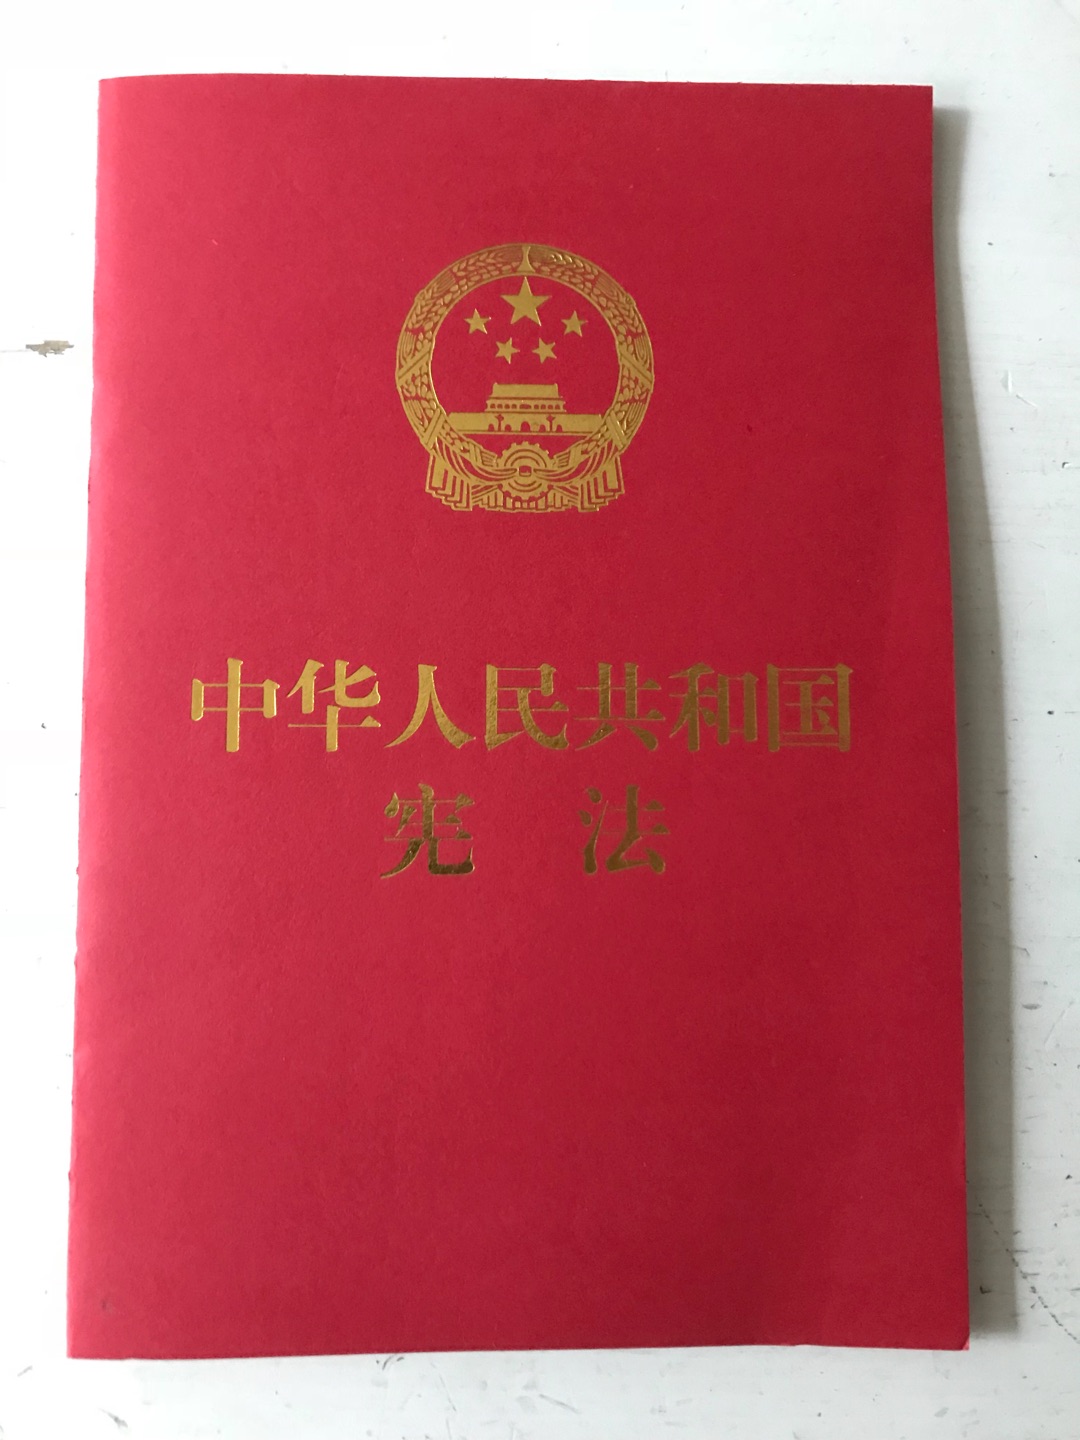 作为中国人我还从没读过本国的宪法，这次算是补了遗憾，抽空仔细读一读。